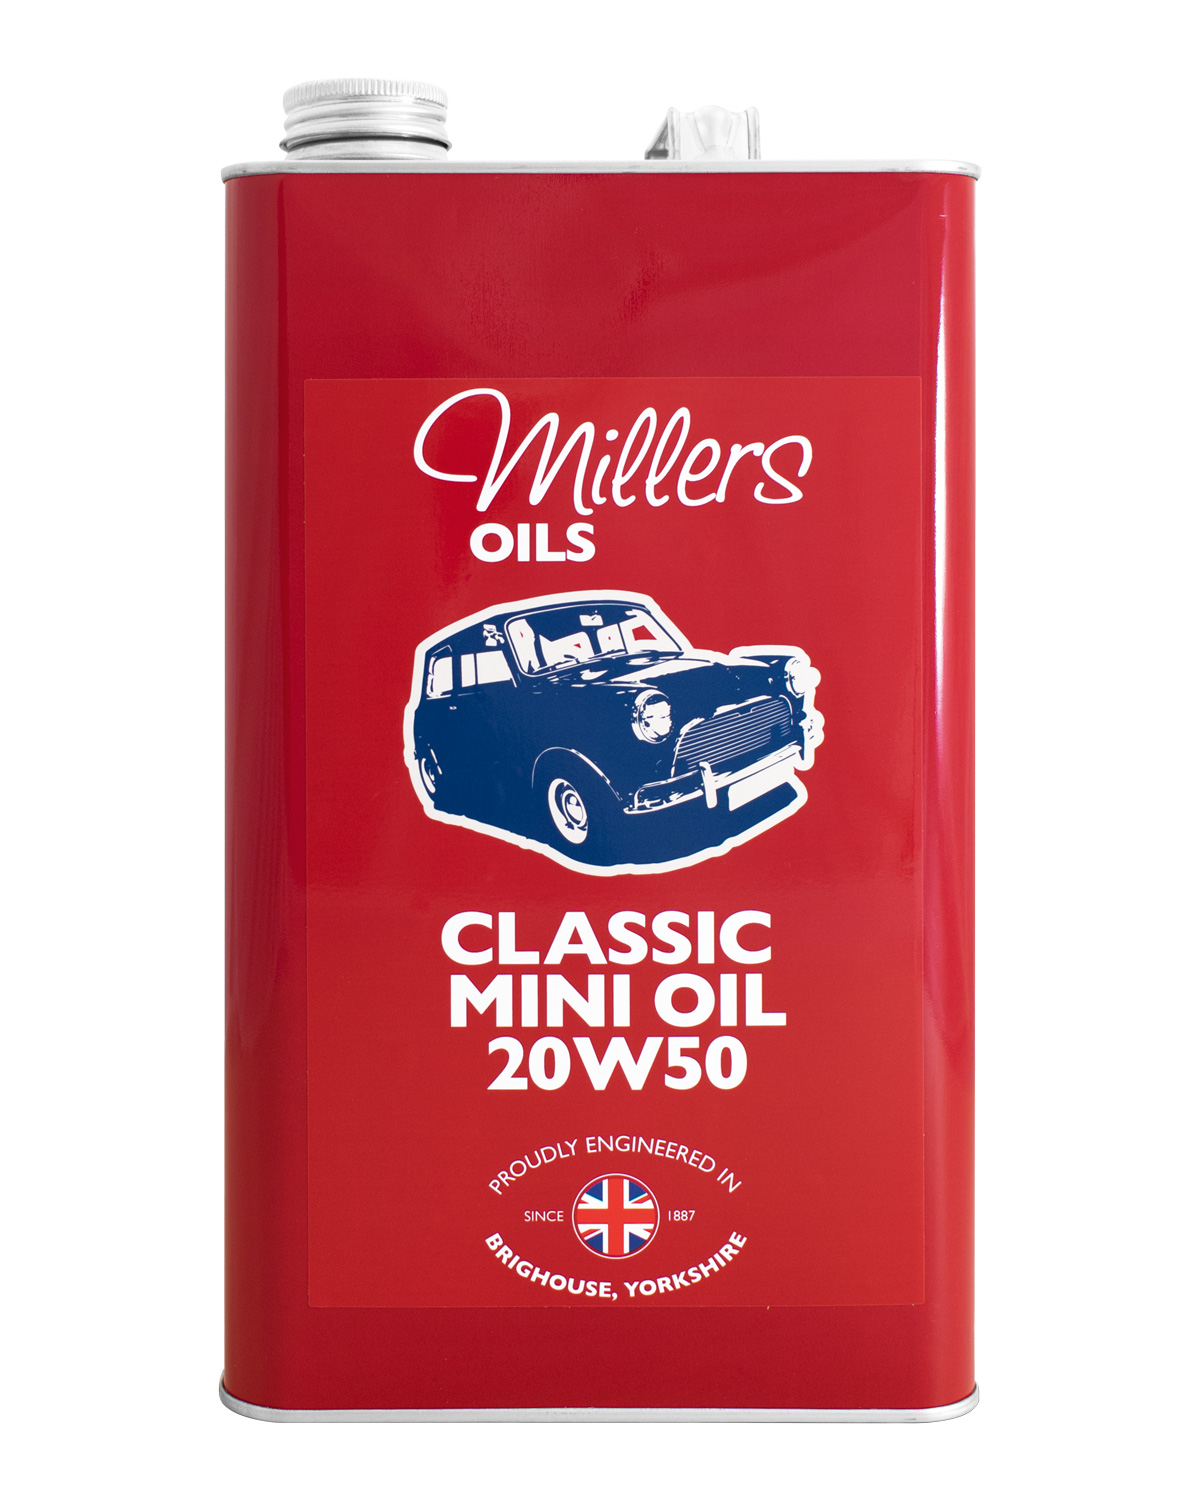 Millers Oils Classic Mini Oil 20W50, 5 Liter